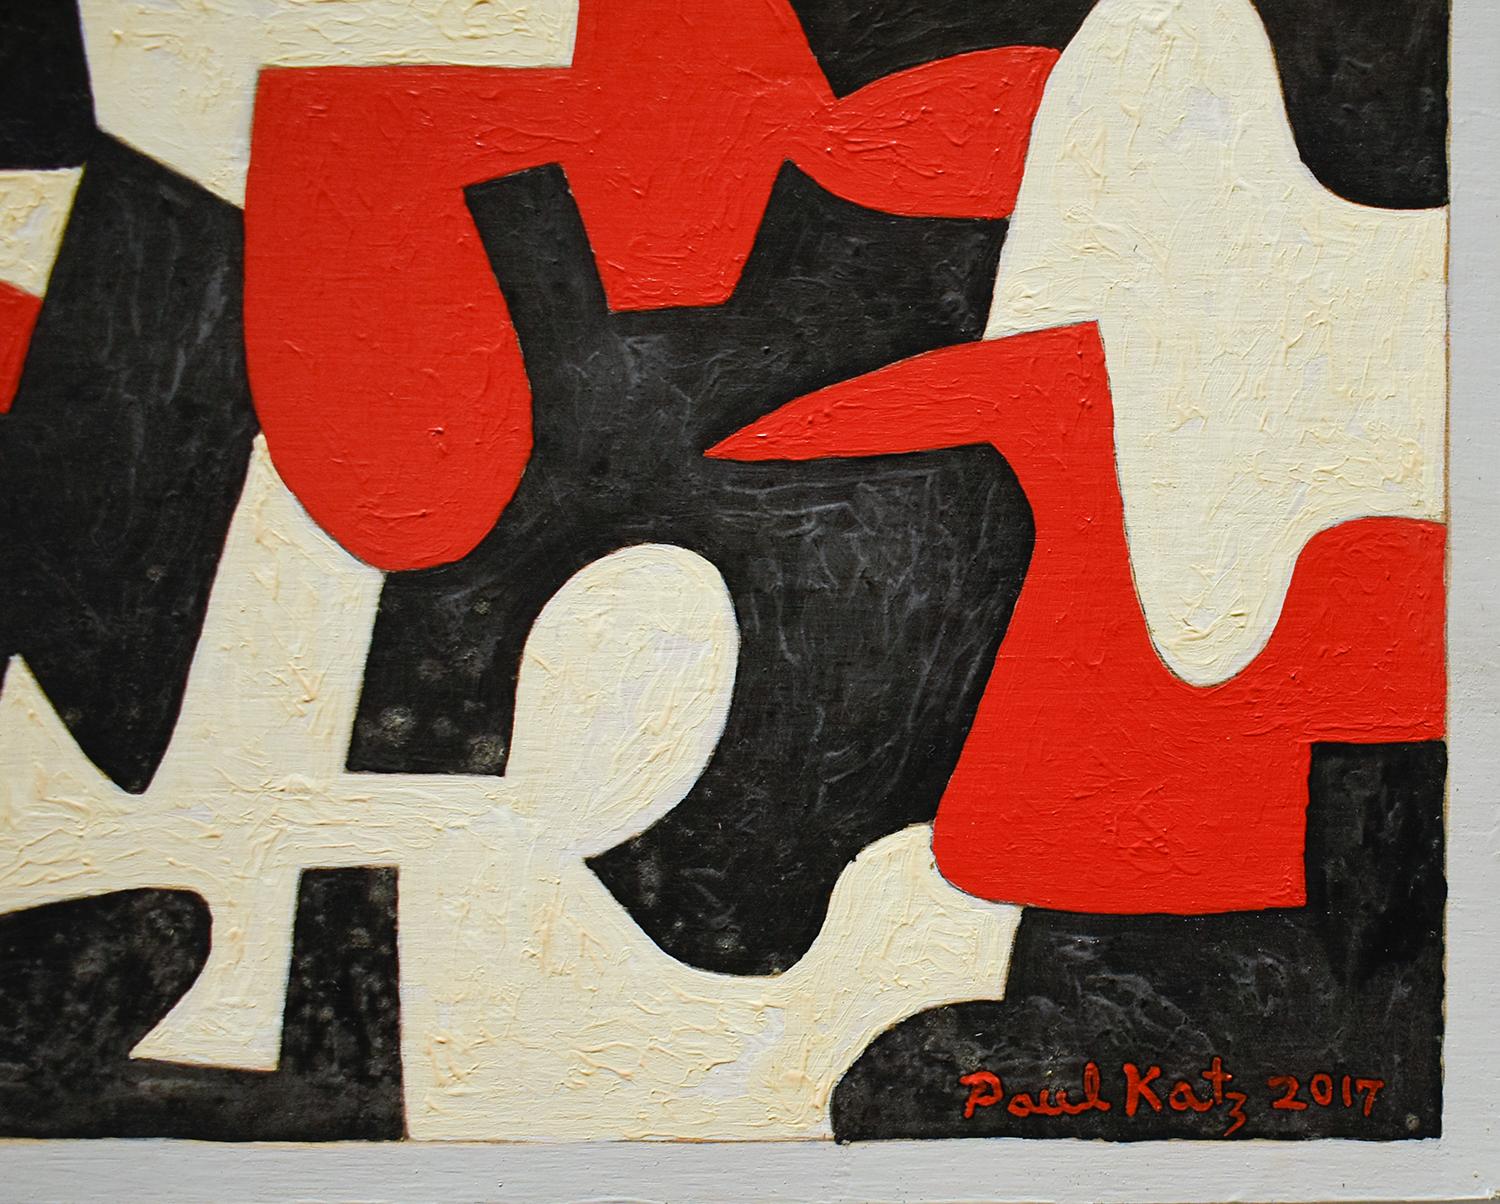 Peinture abstraite contemporaine, hard edge, en rouge, gris, blanc et noir.
Interlock #52, 2017
24 x 24 pouces
huile sur panneau de bois
Les côtés sont peints, l'objet est donc prêt à être accroché tel quel.

Cette peinture à l'huile contemporaine